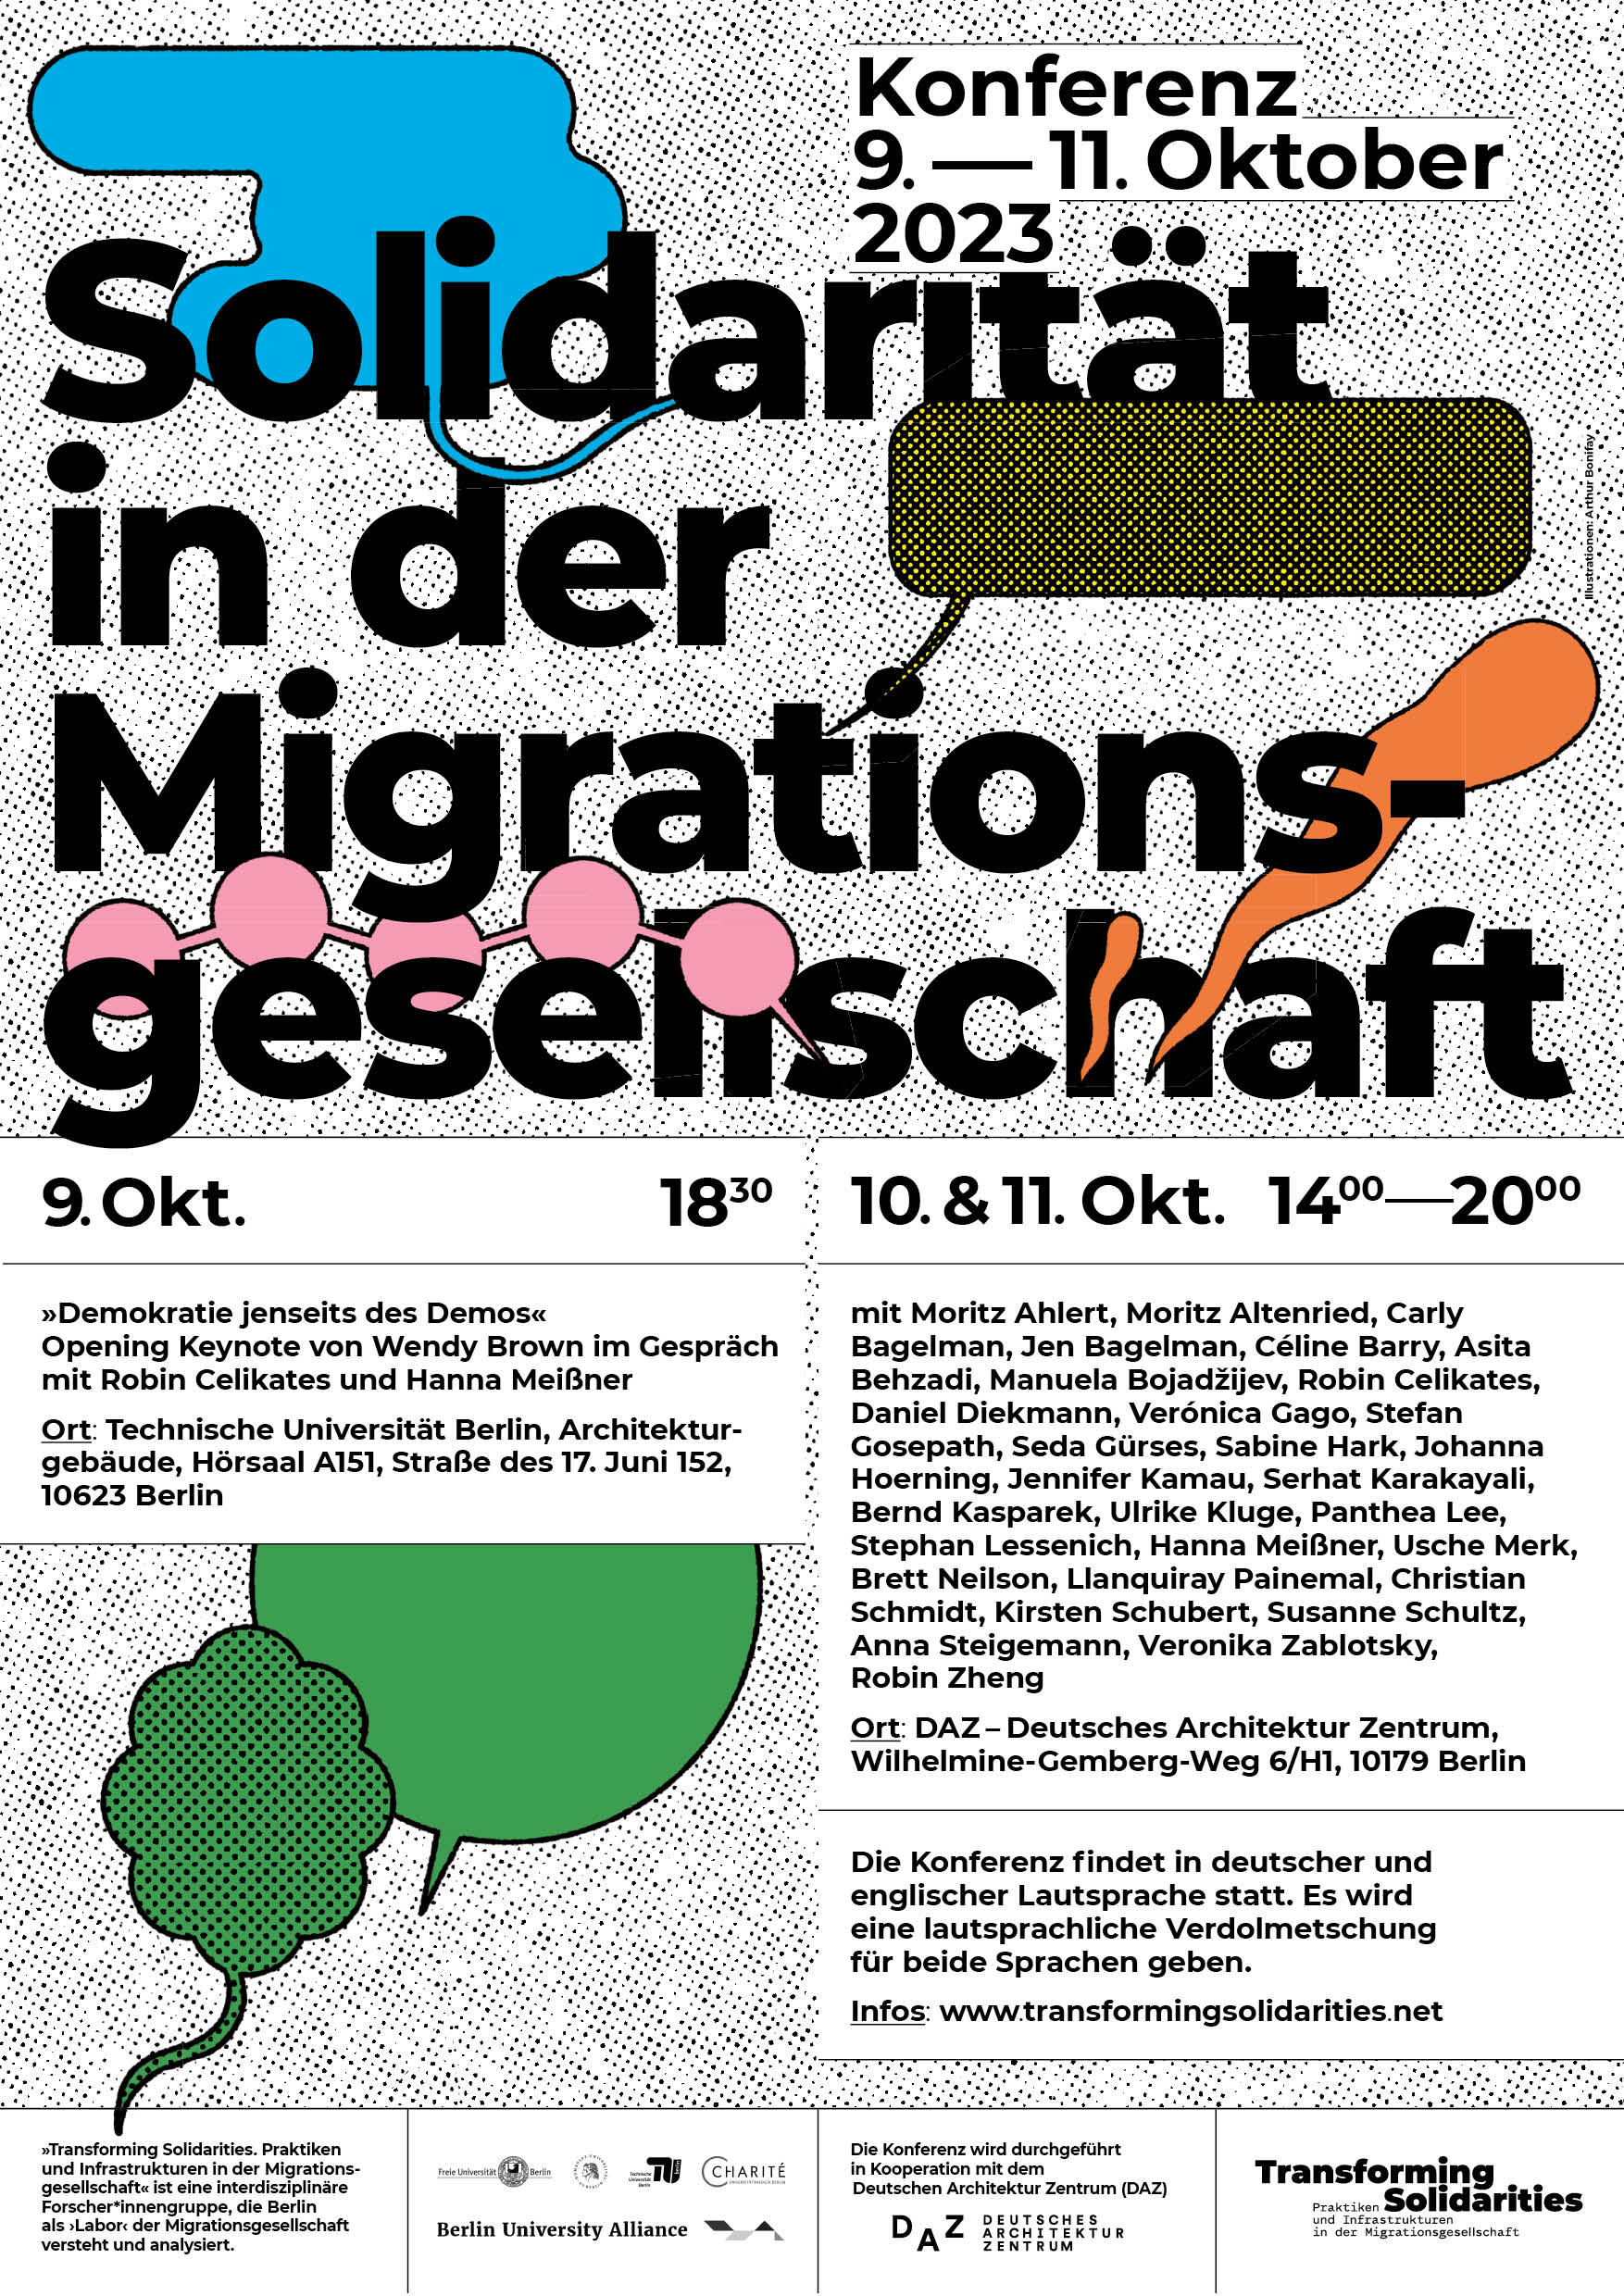 Transforming-Solidarities_Konferenz_Plakat__DE.jpg